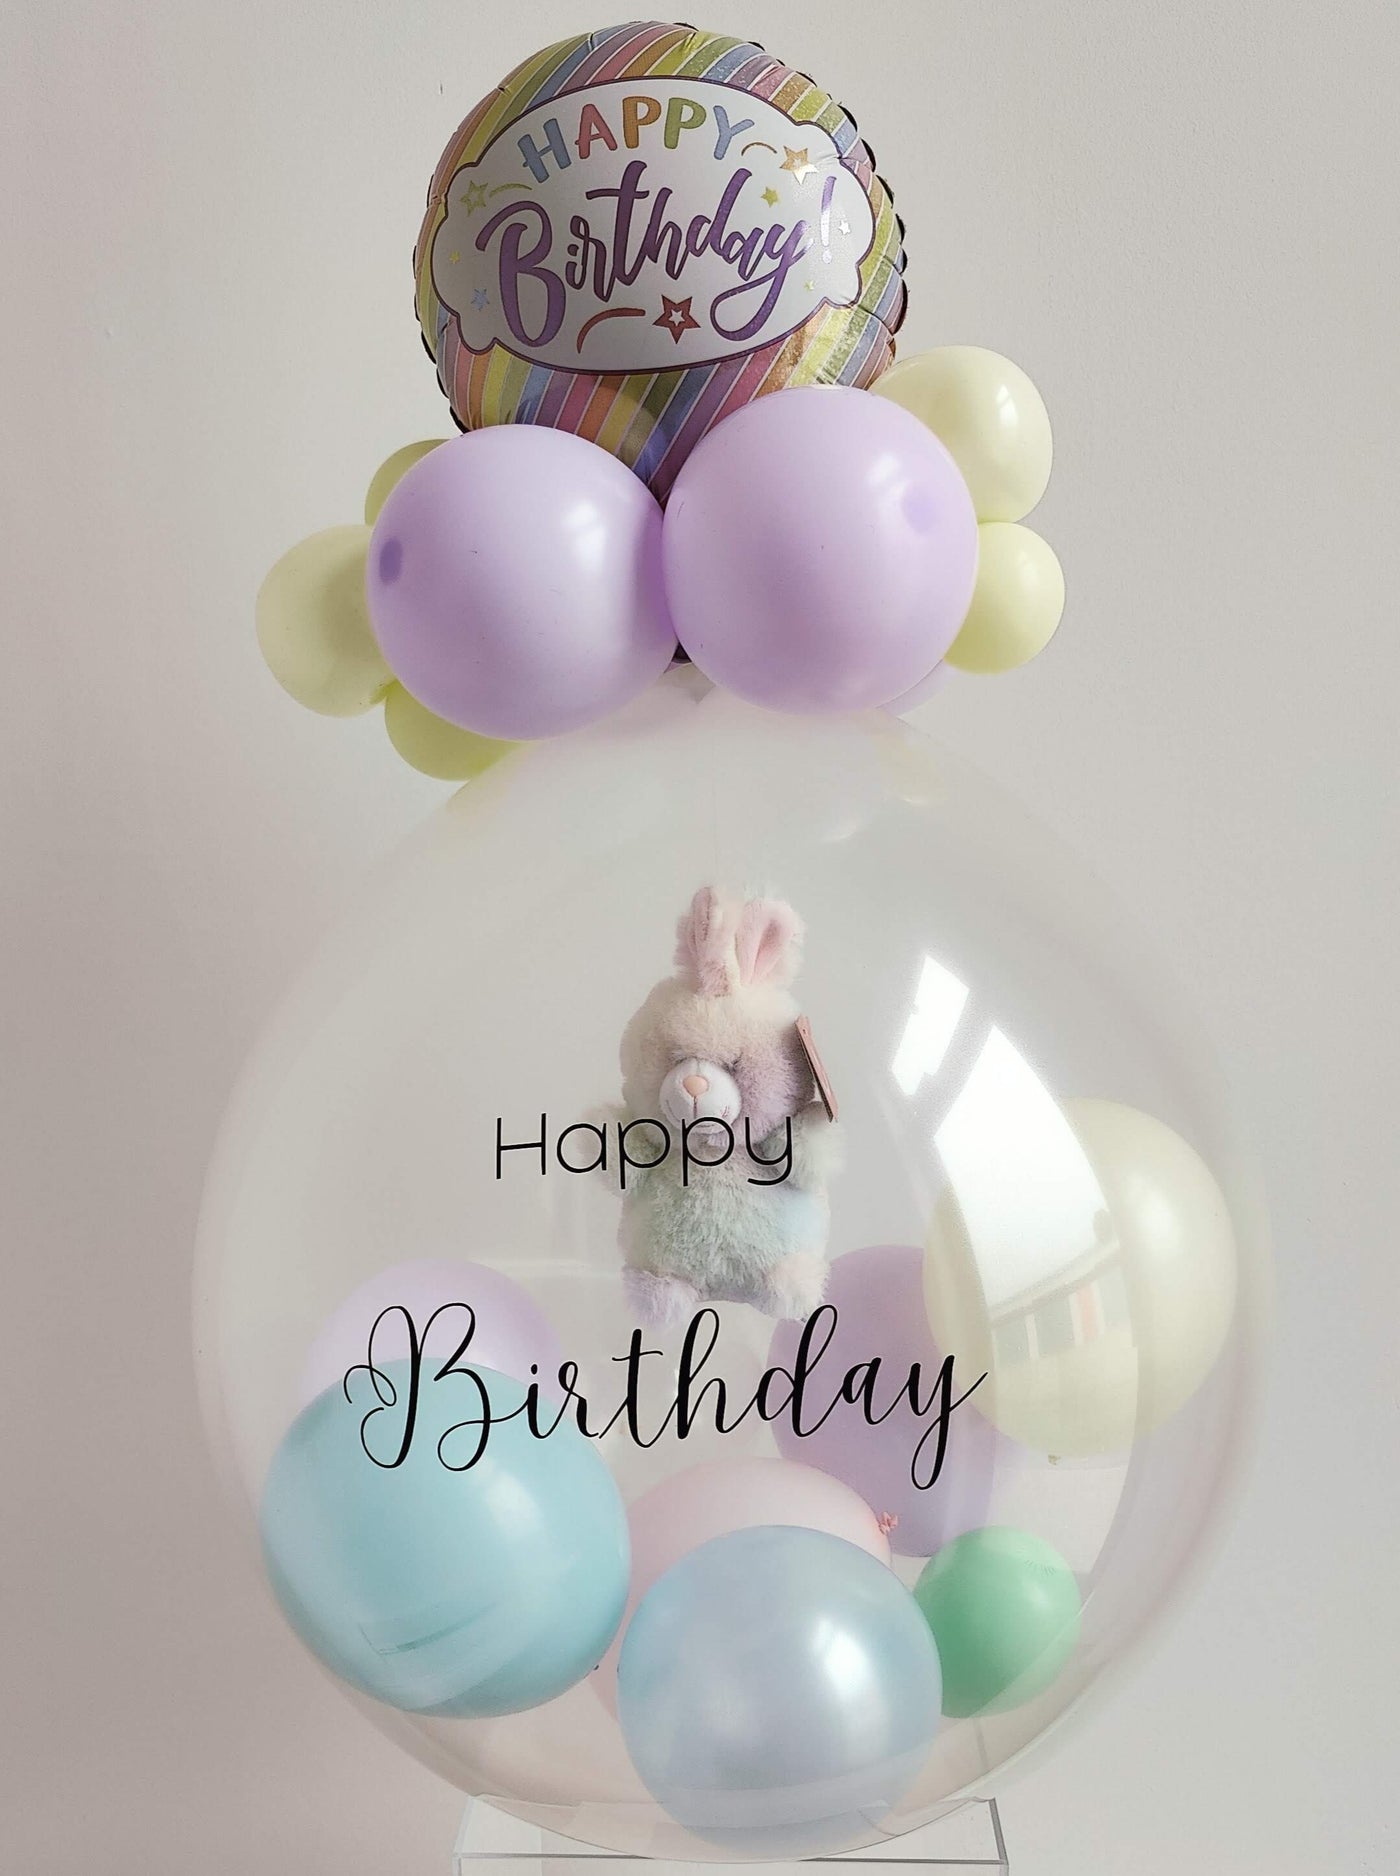 Stuffed Balloon With Mini Stuffed Bunny